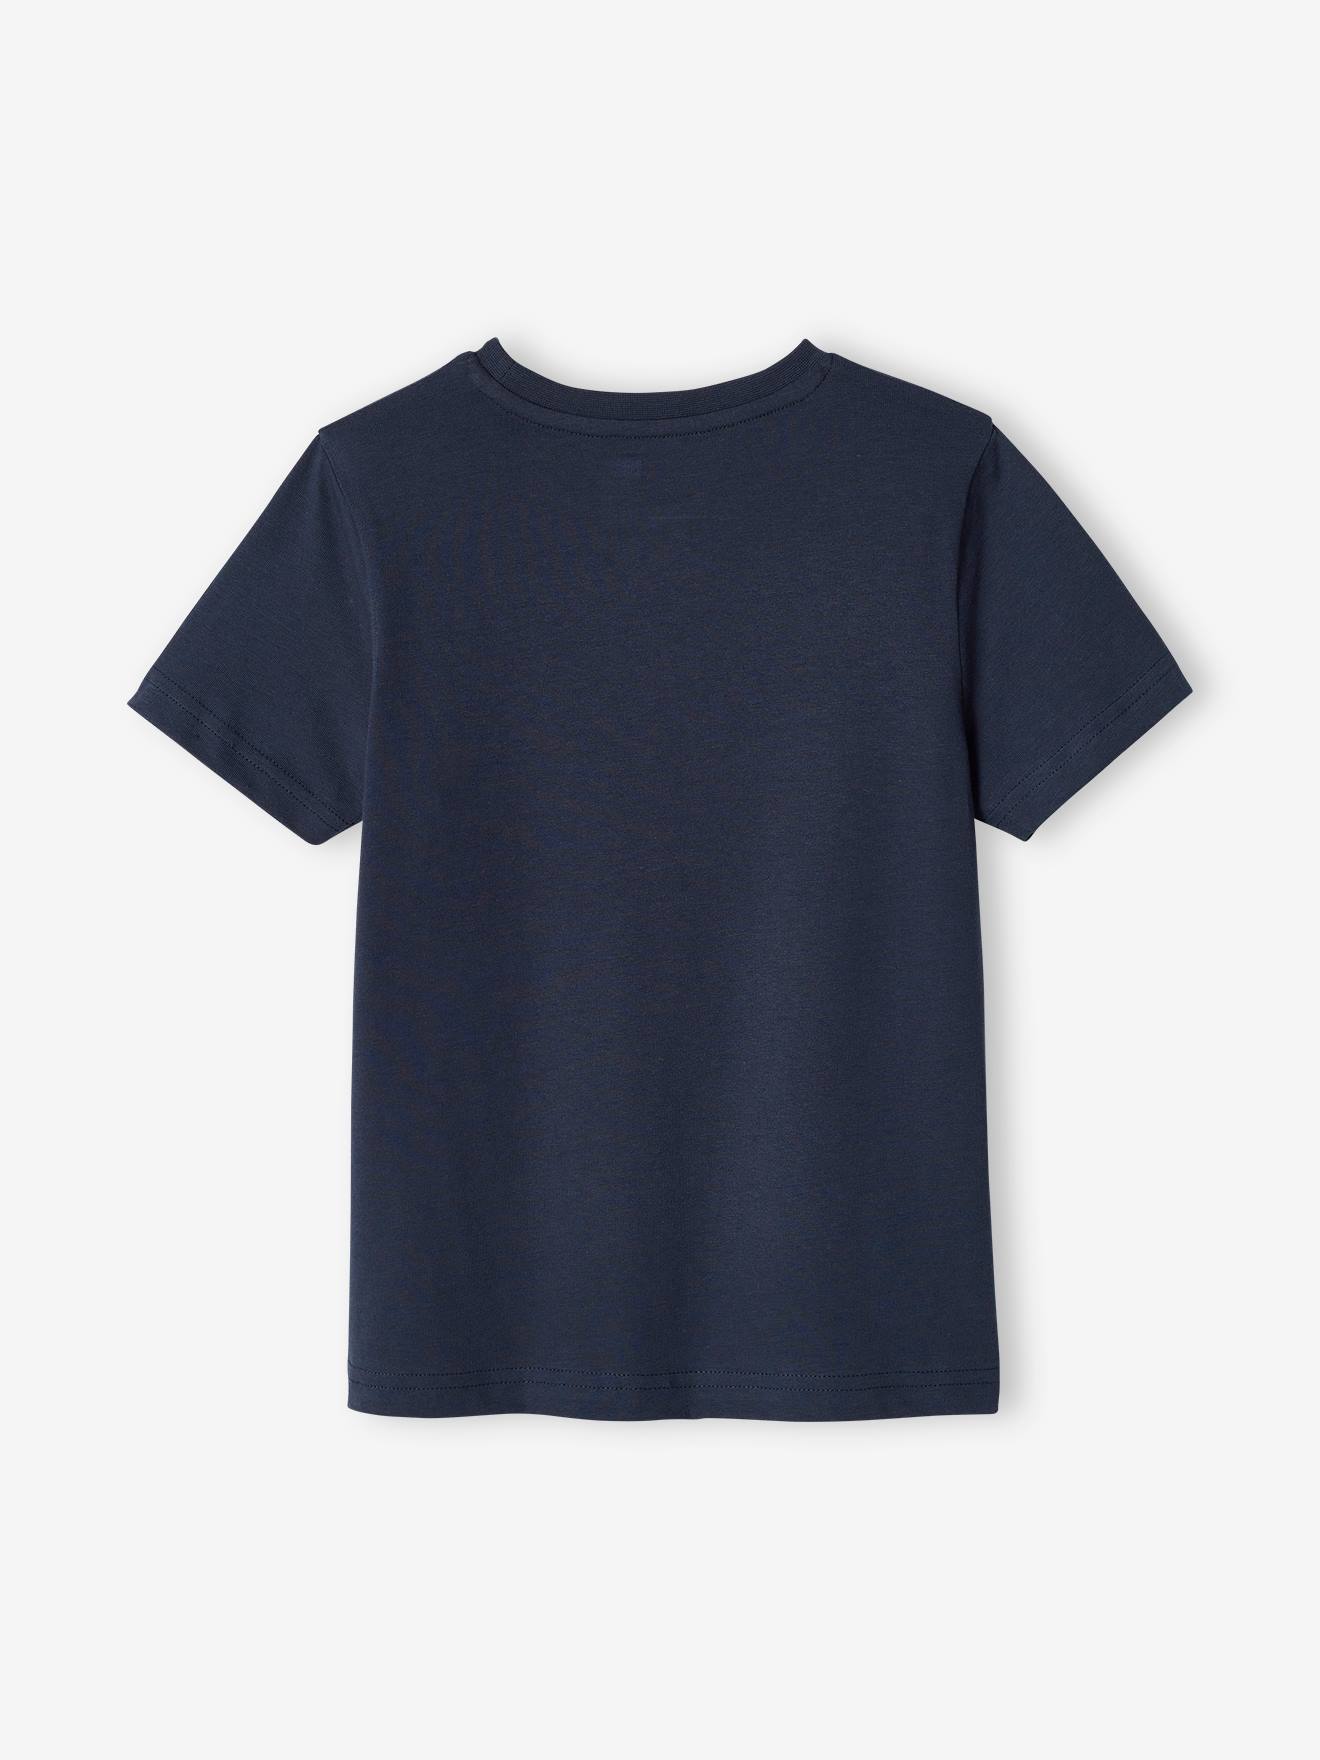 تی شرت پسرانه 40303 سایز 2 تا 14 سال مارک VertBaudet